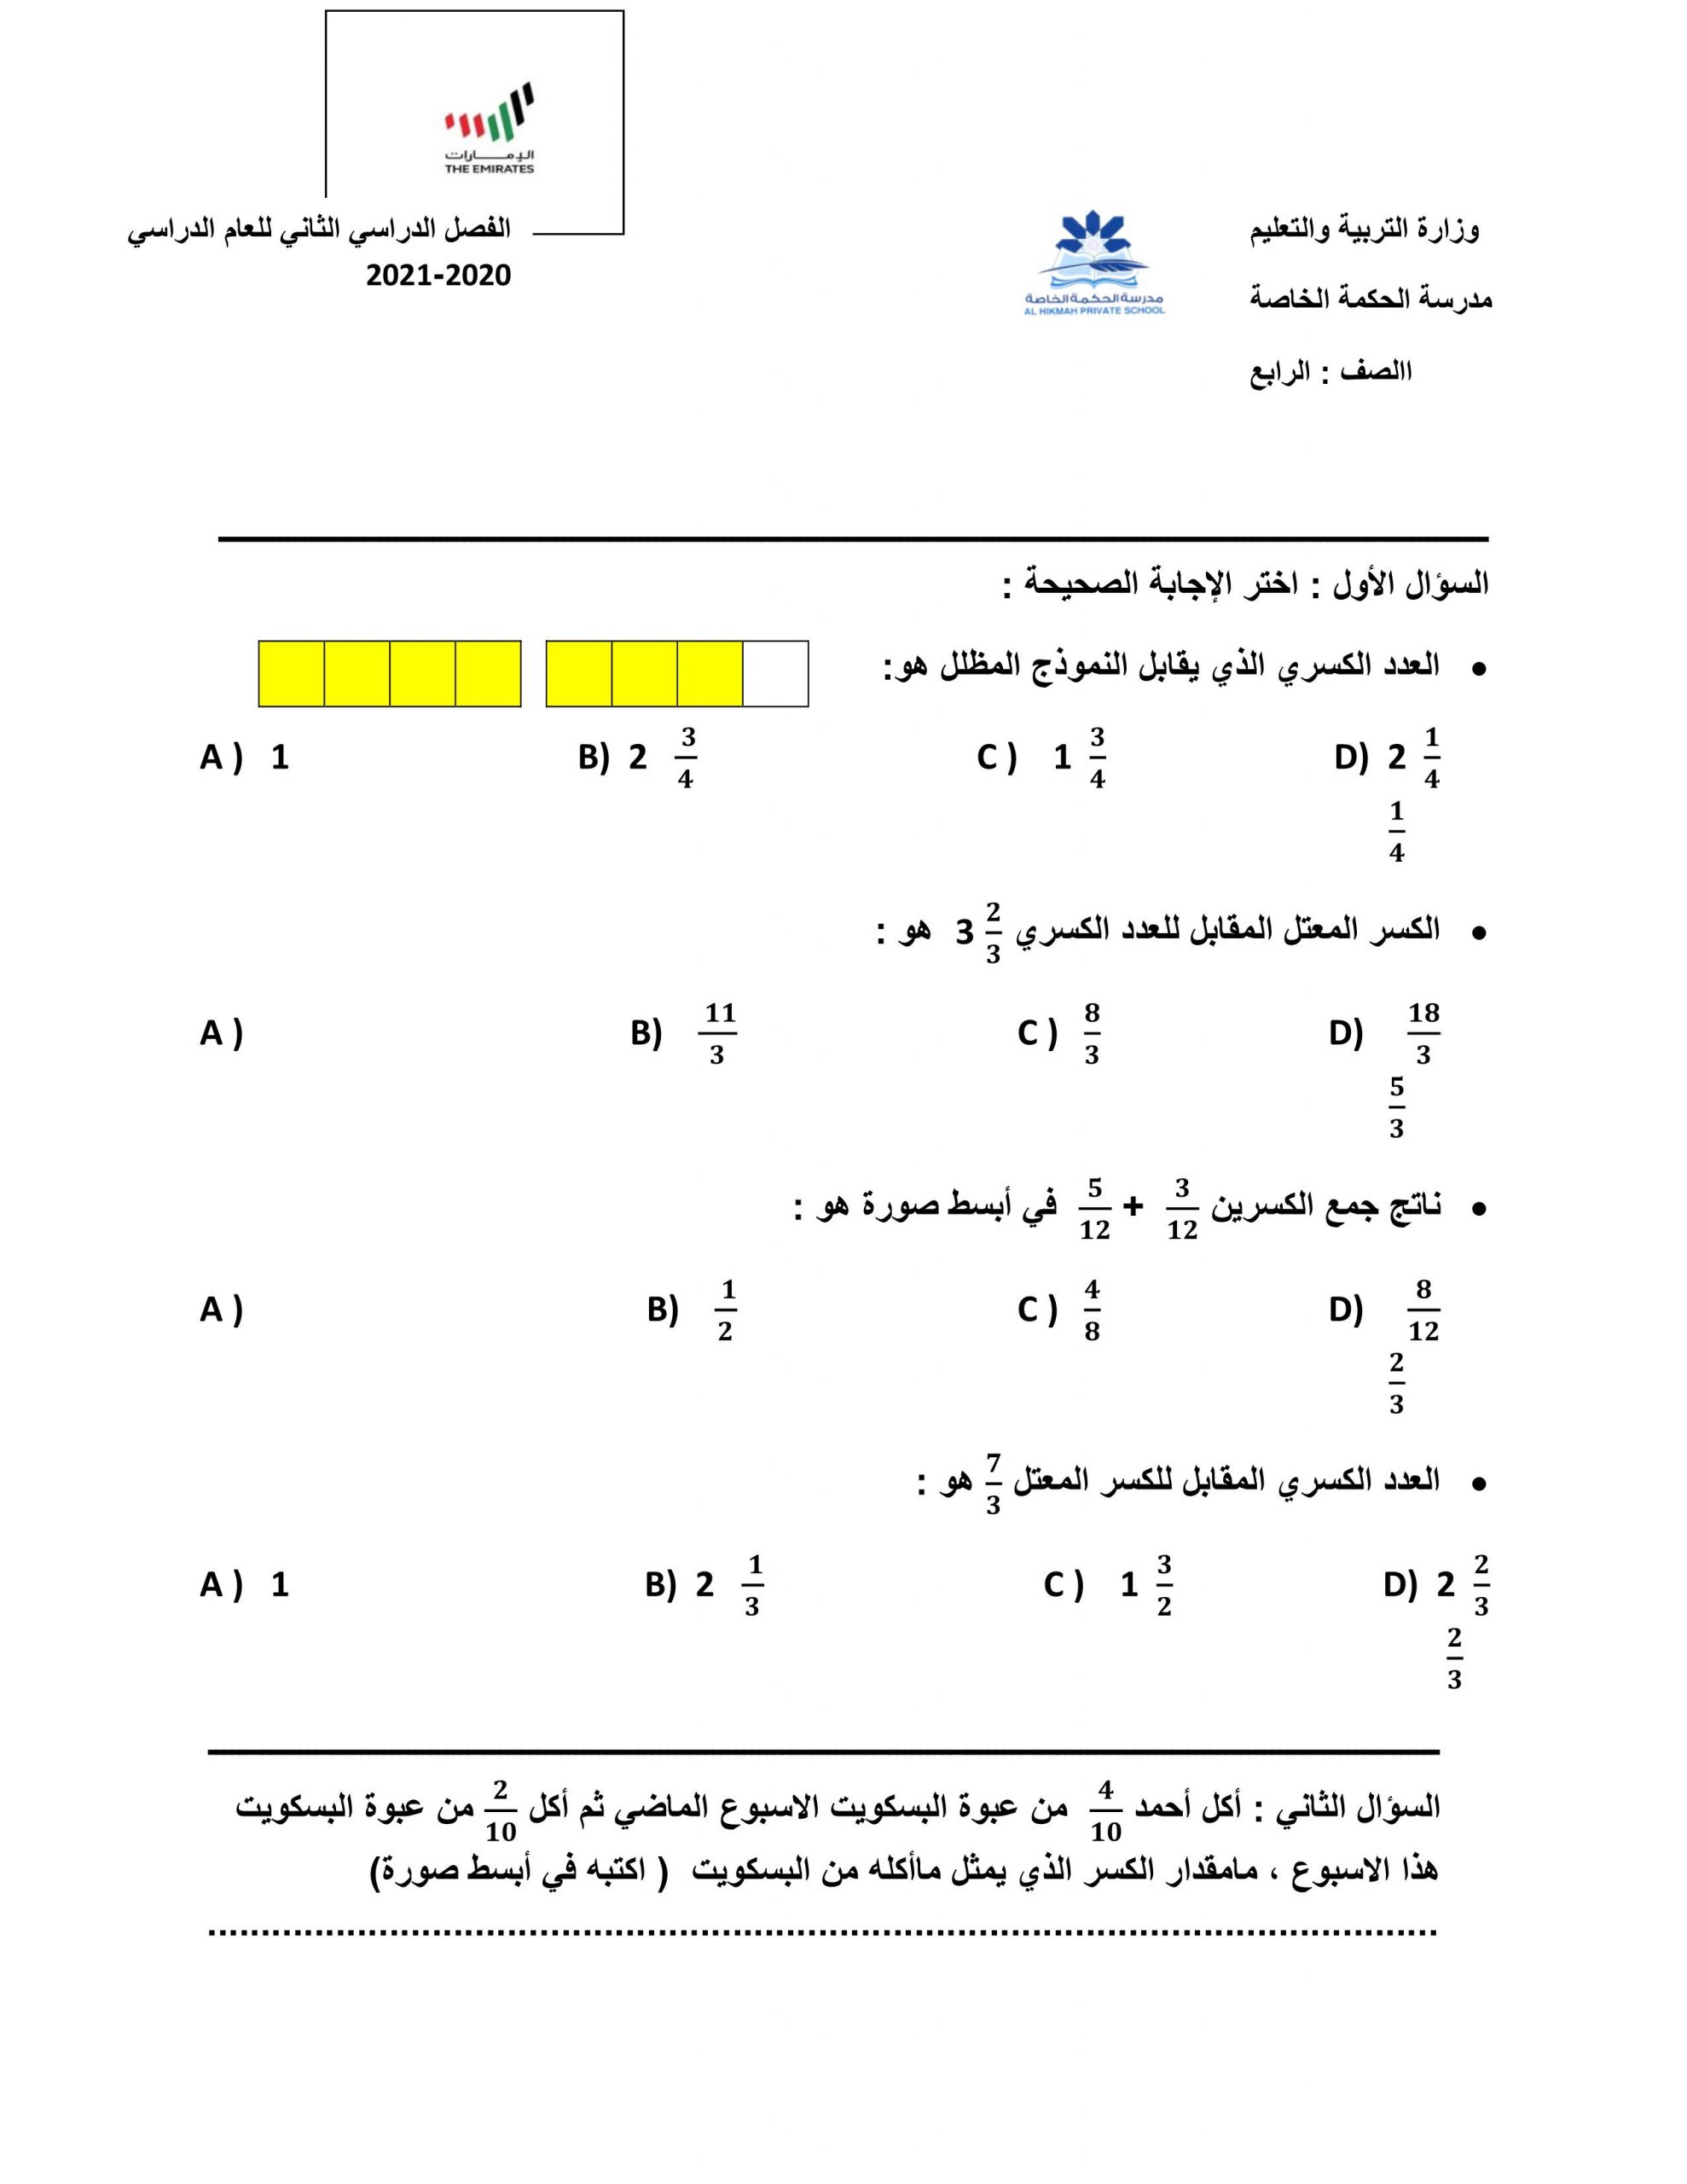 أوراق عمل الوحدة الثامنة والتاسعة الصف الرابع مادة الرياضيات المتكاملة 